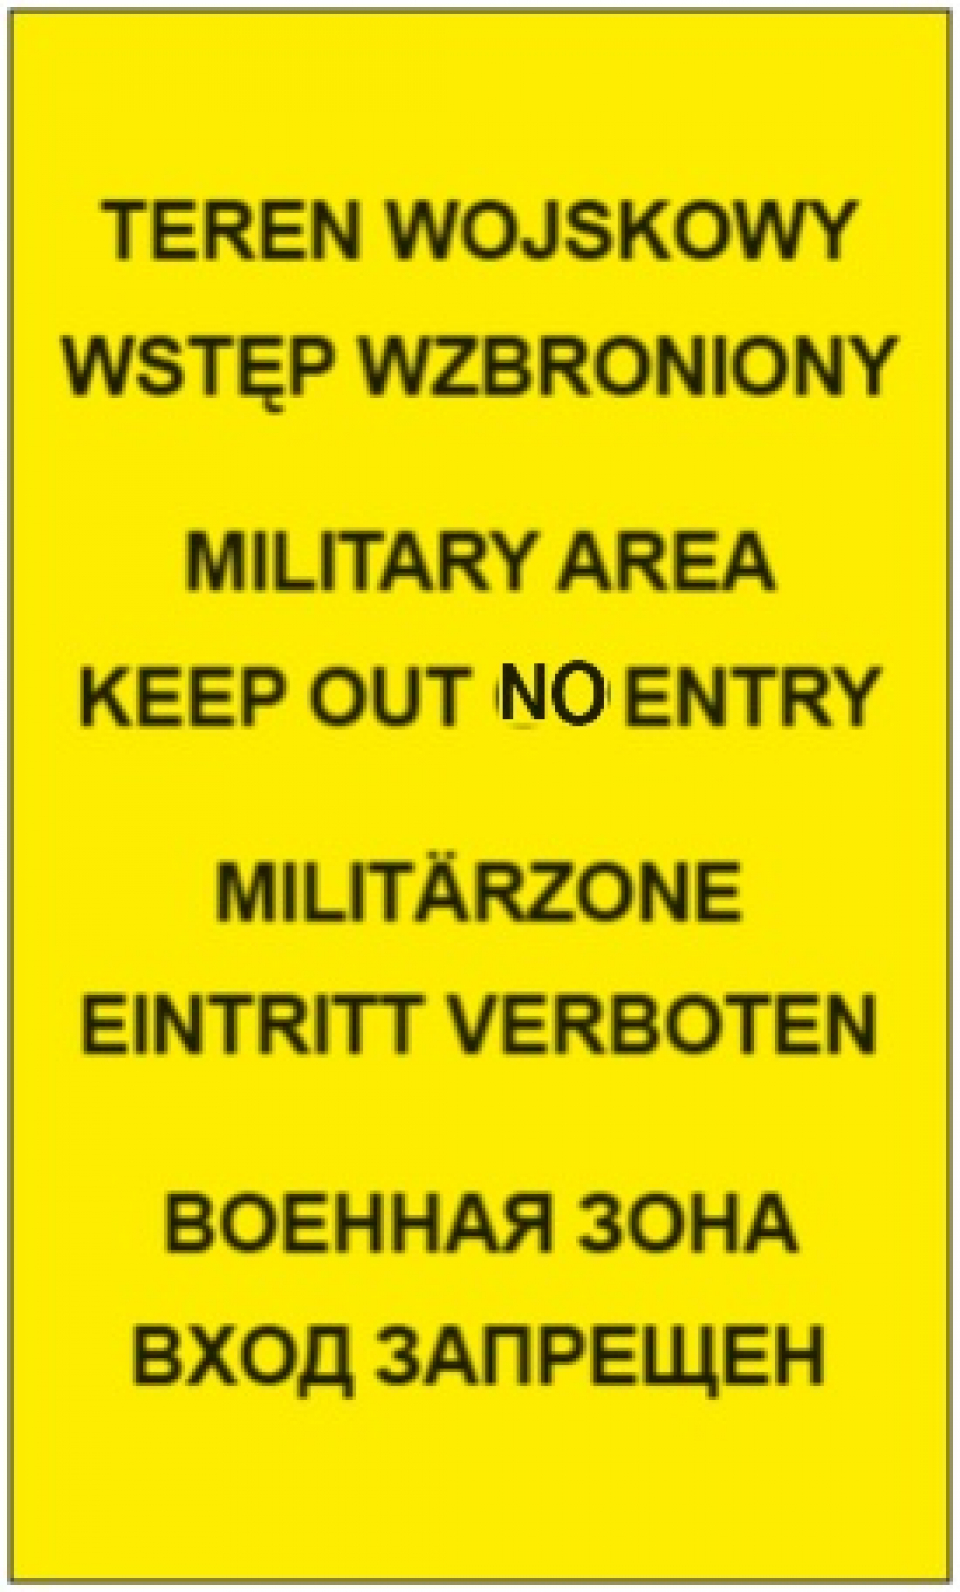 Na tablicy z żółtym tłem znajduje się czarny napis w czterech językach: TEREN WOJSKOWY WSTĘP WZBRONIONY